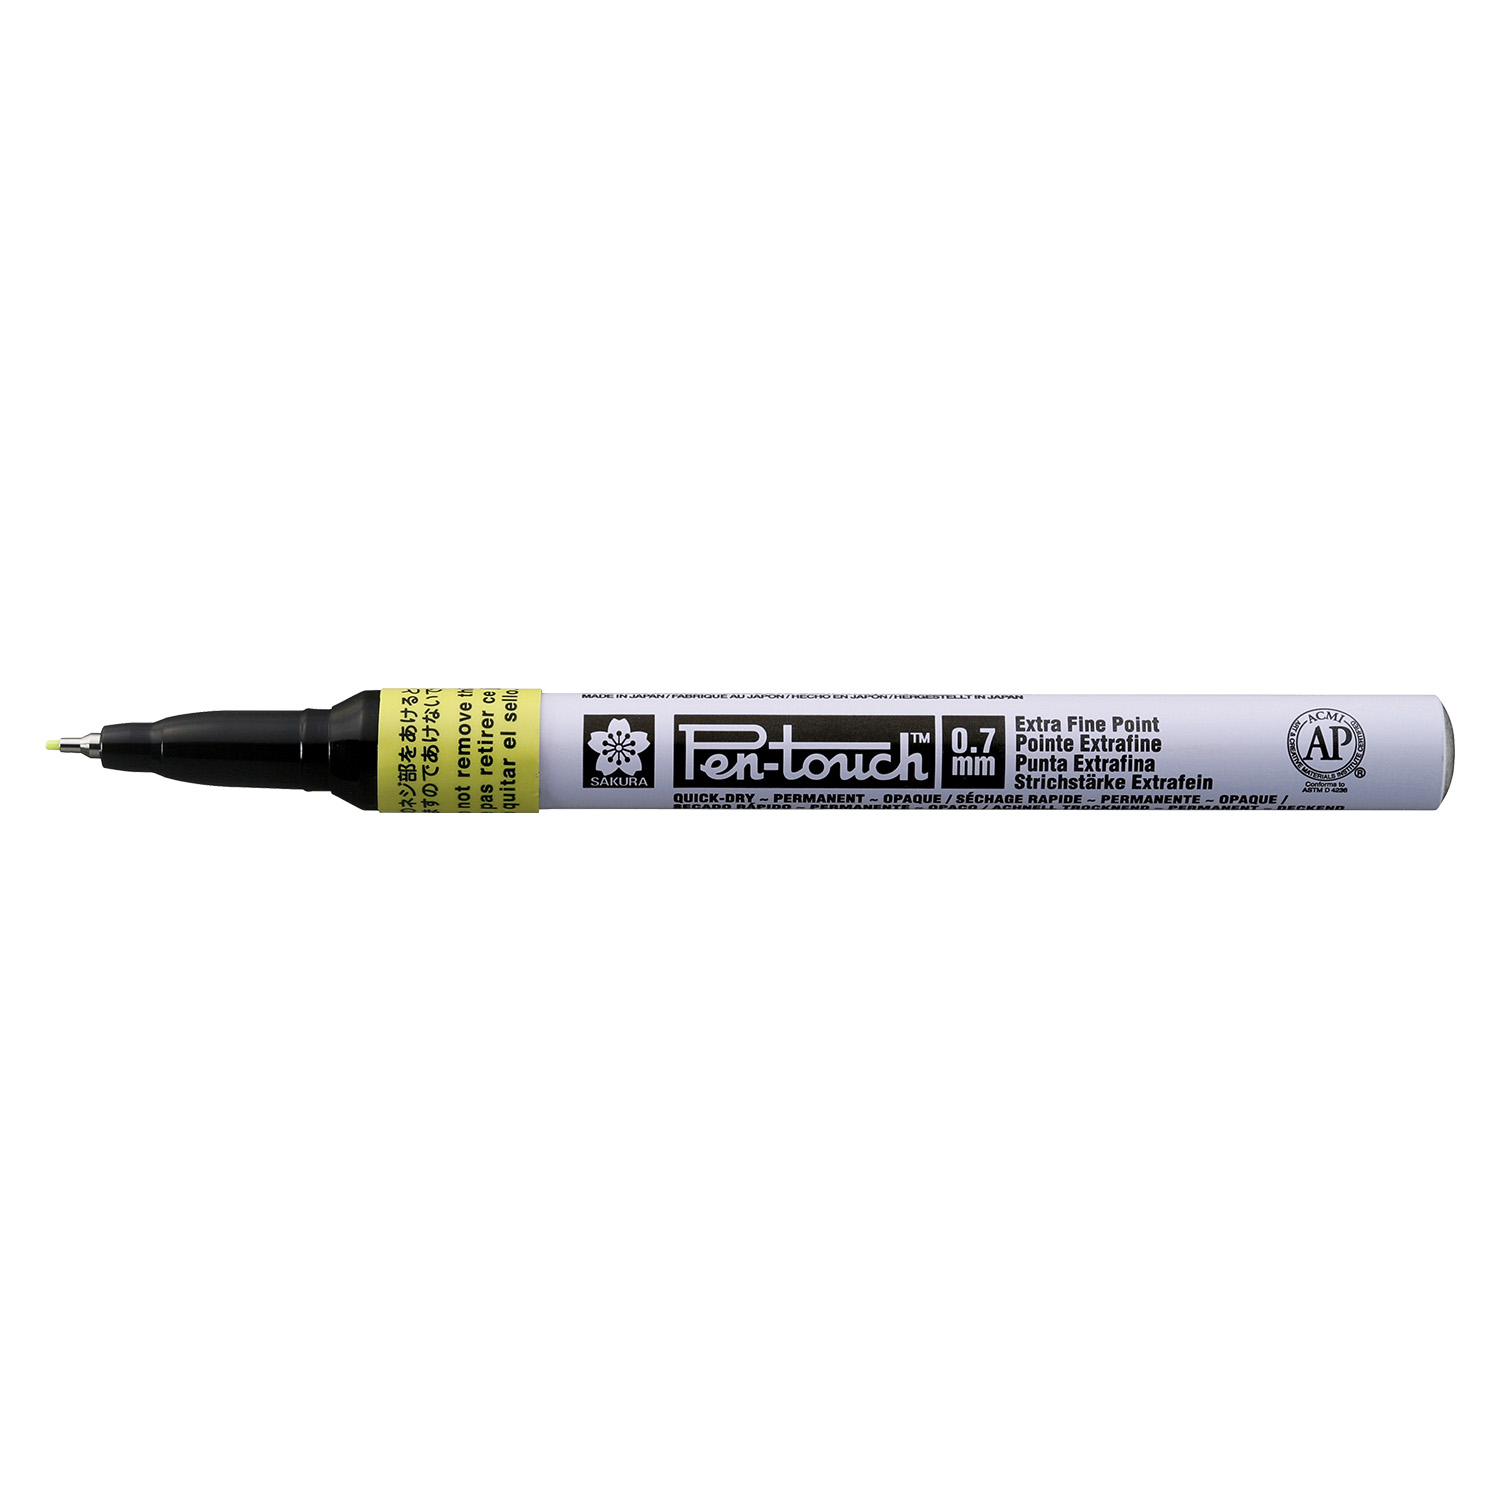 Marcador Permanente Pen Touch Sakura Extra Fino 0.7mm